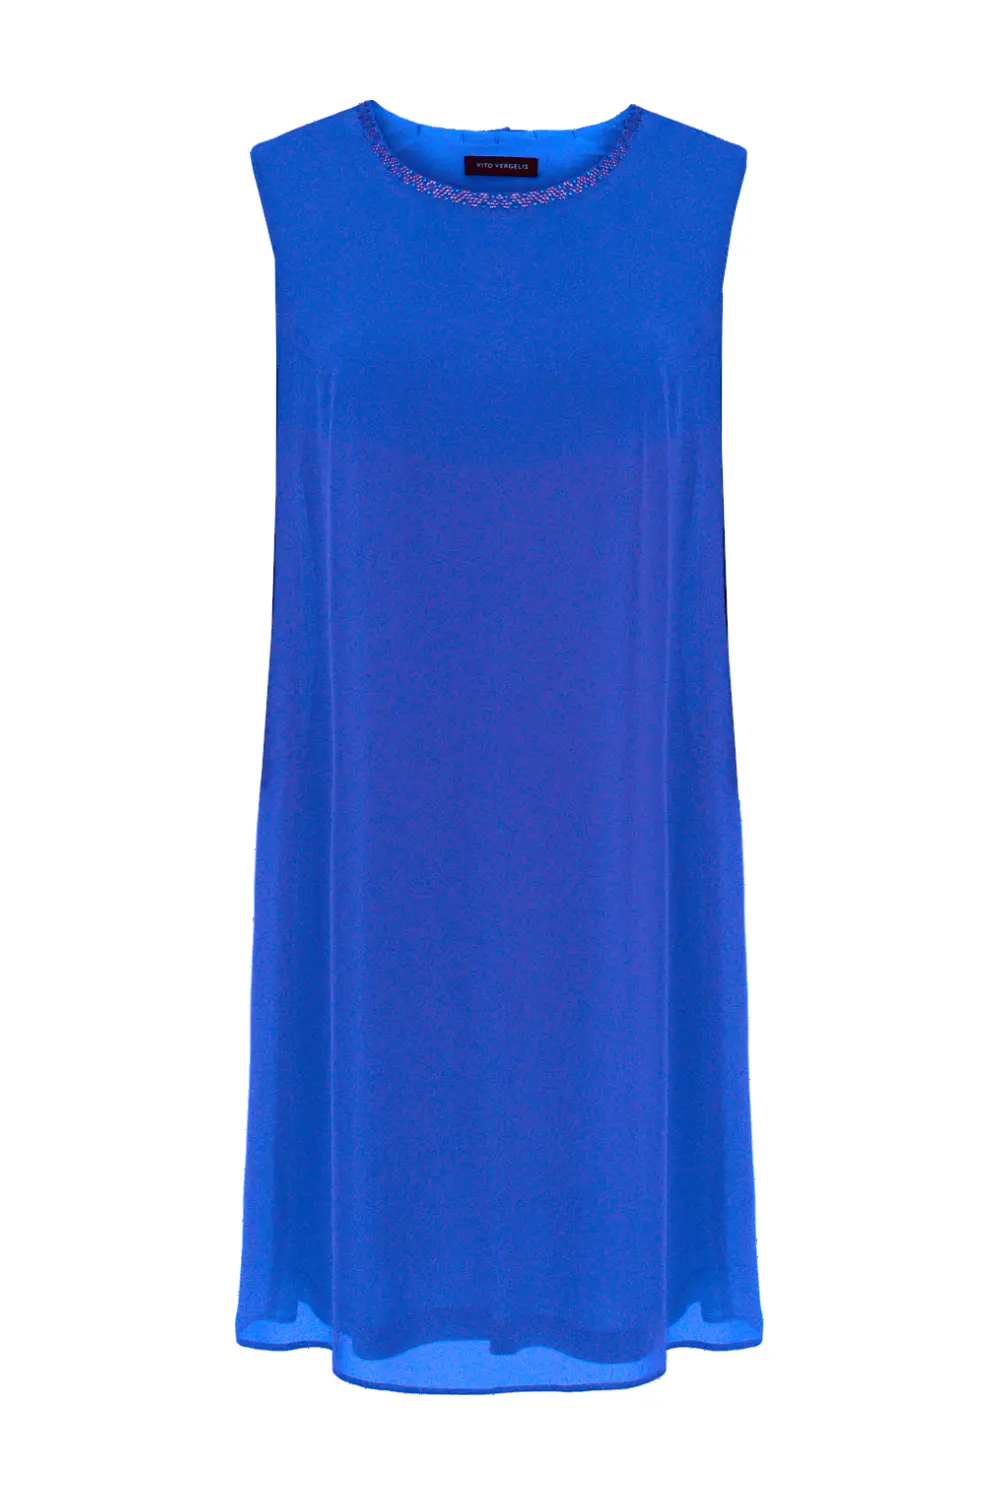 Szyfonowa sukienka wizytowa kobaltowa bez rękawów polska marka Vito Vergelis